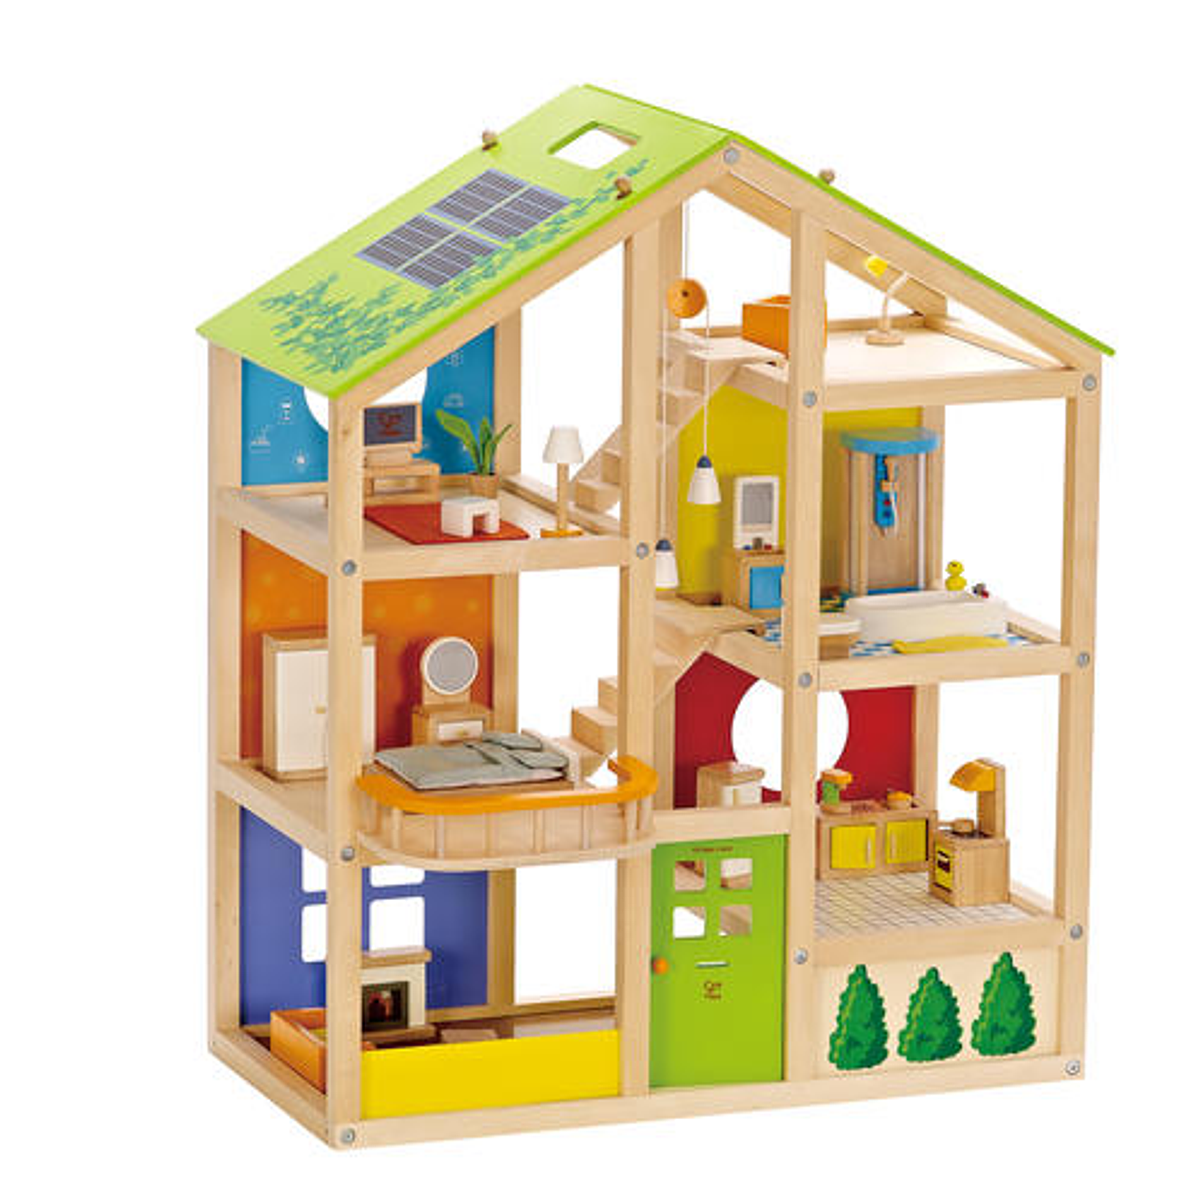 Juguetes por edad: de 0 a 1 año – Toys by age: 0 to 1 - Montessori en Casa